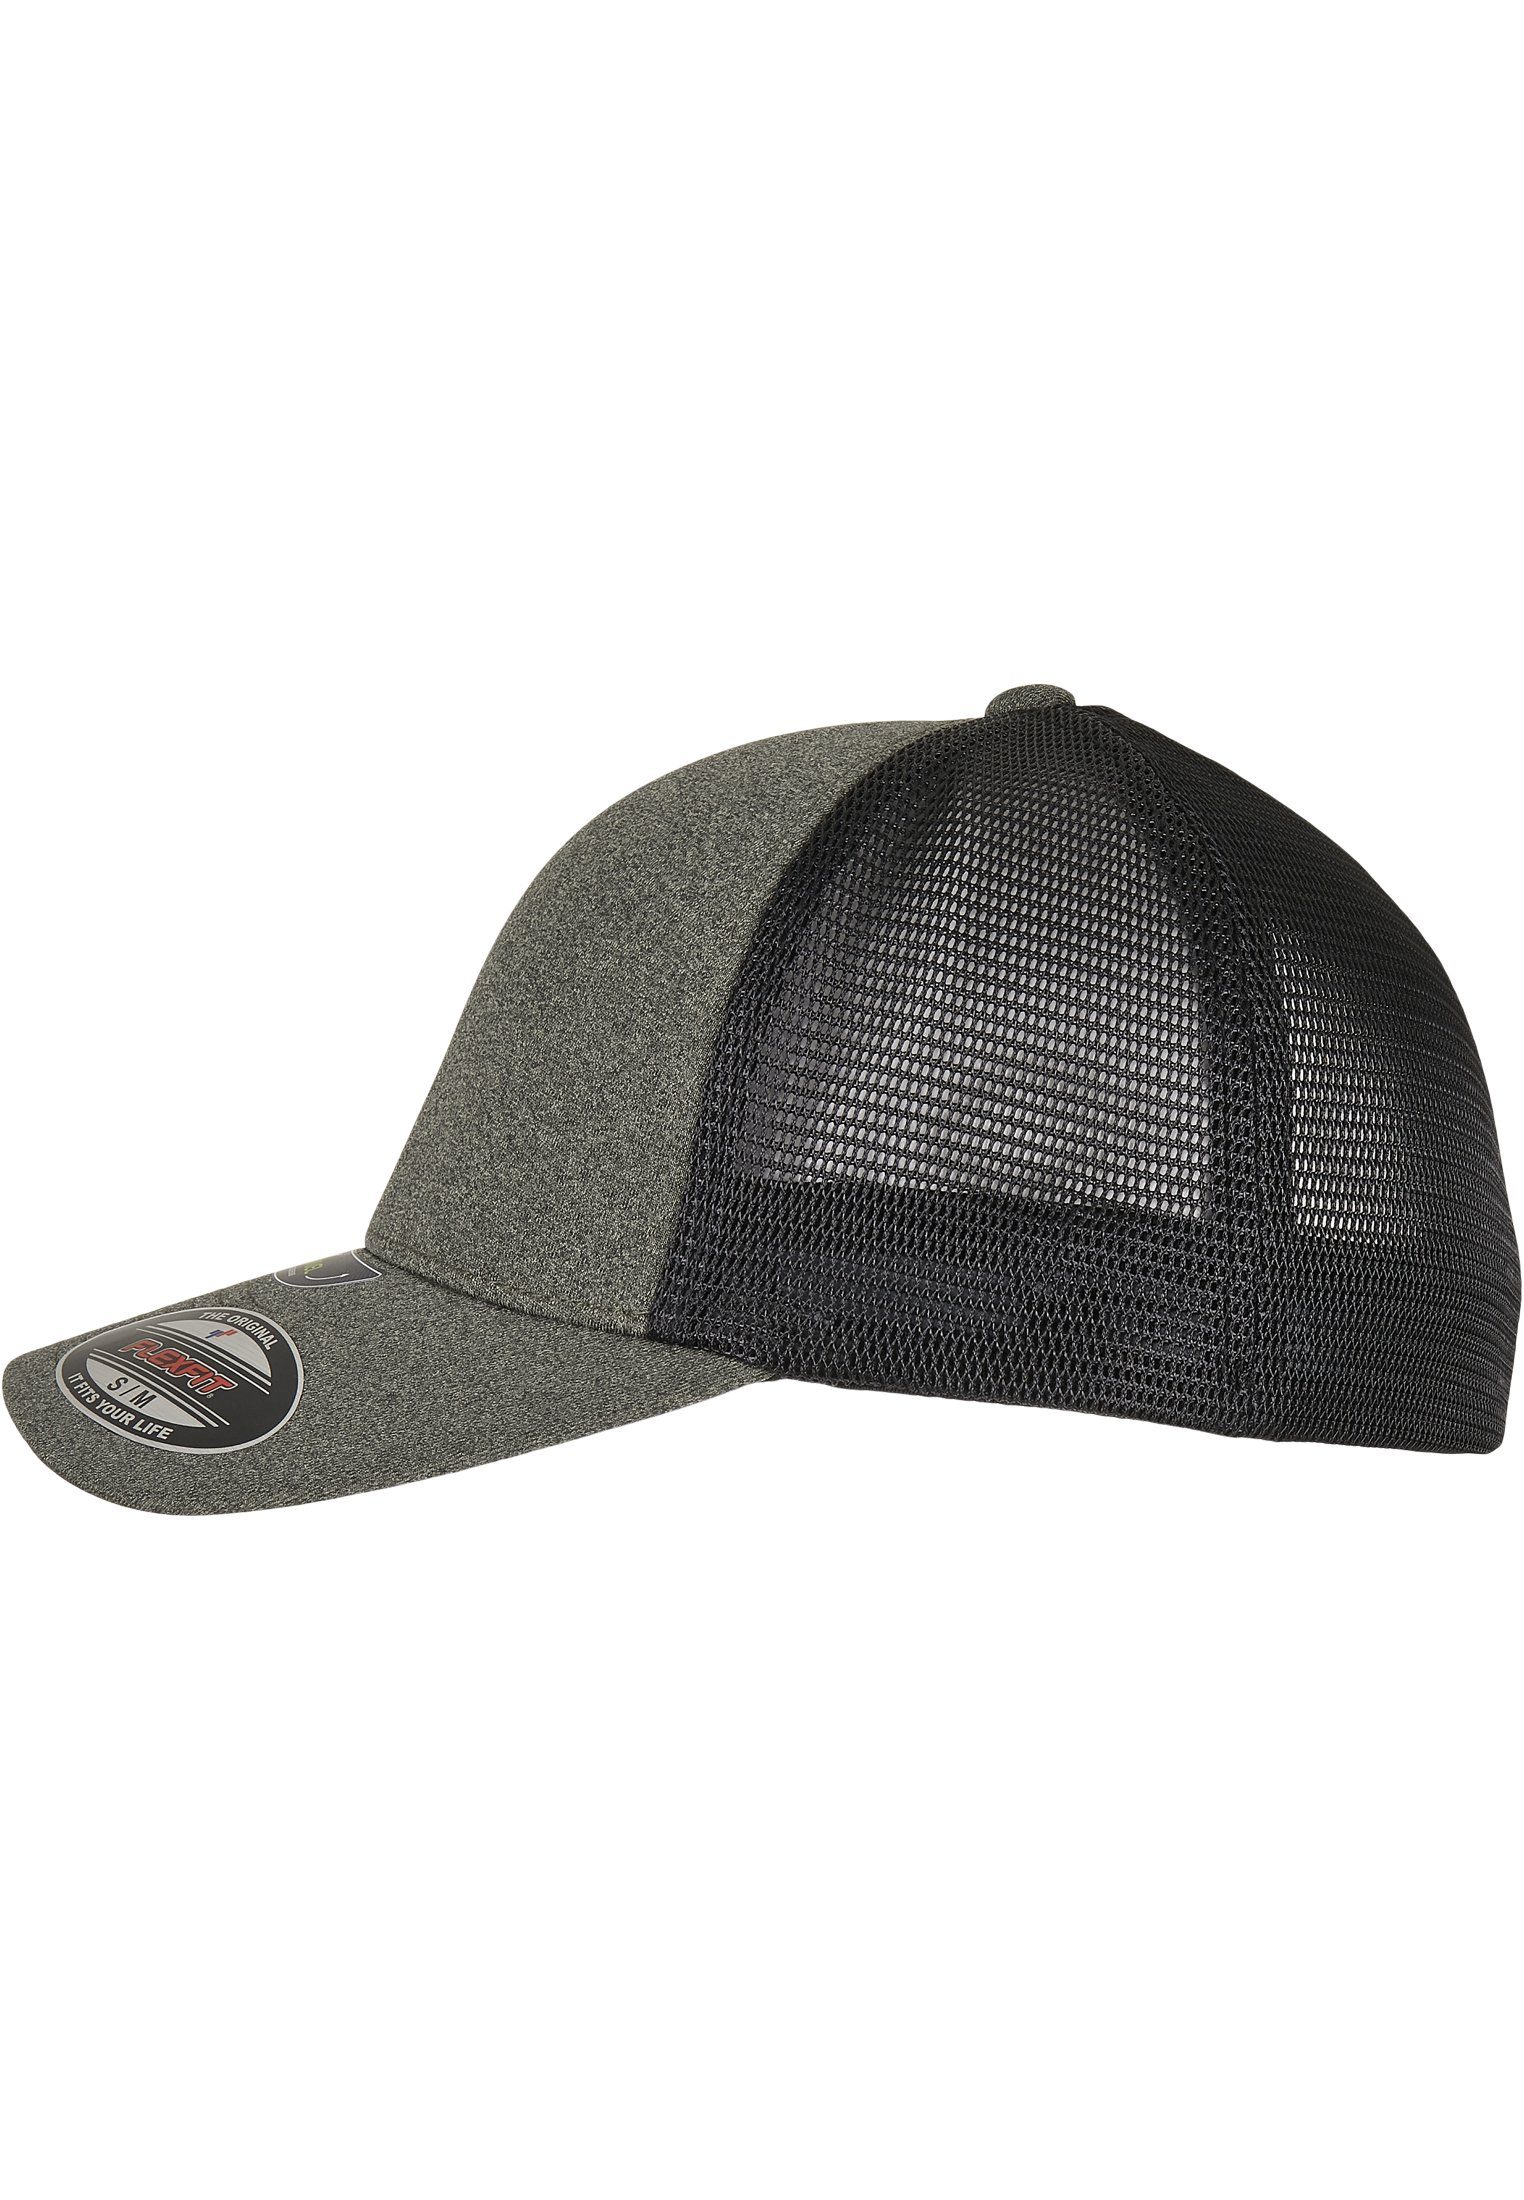 Flexfit Flex Cap Accessoires FLEXFIT CAP olive/black UNIPANEL™